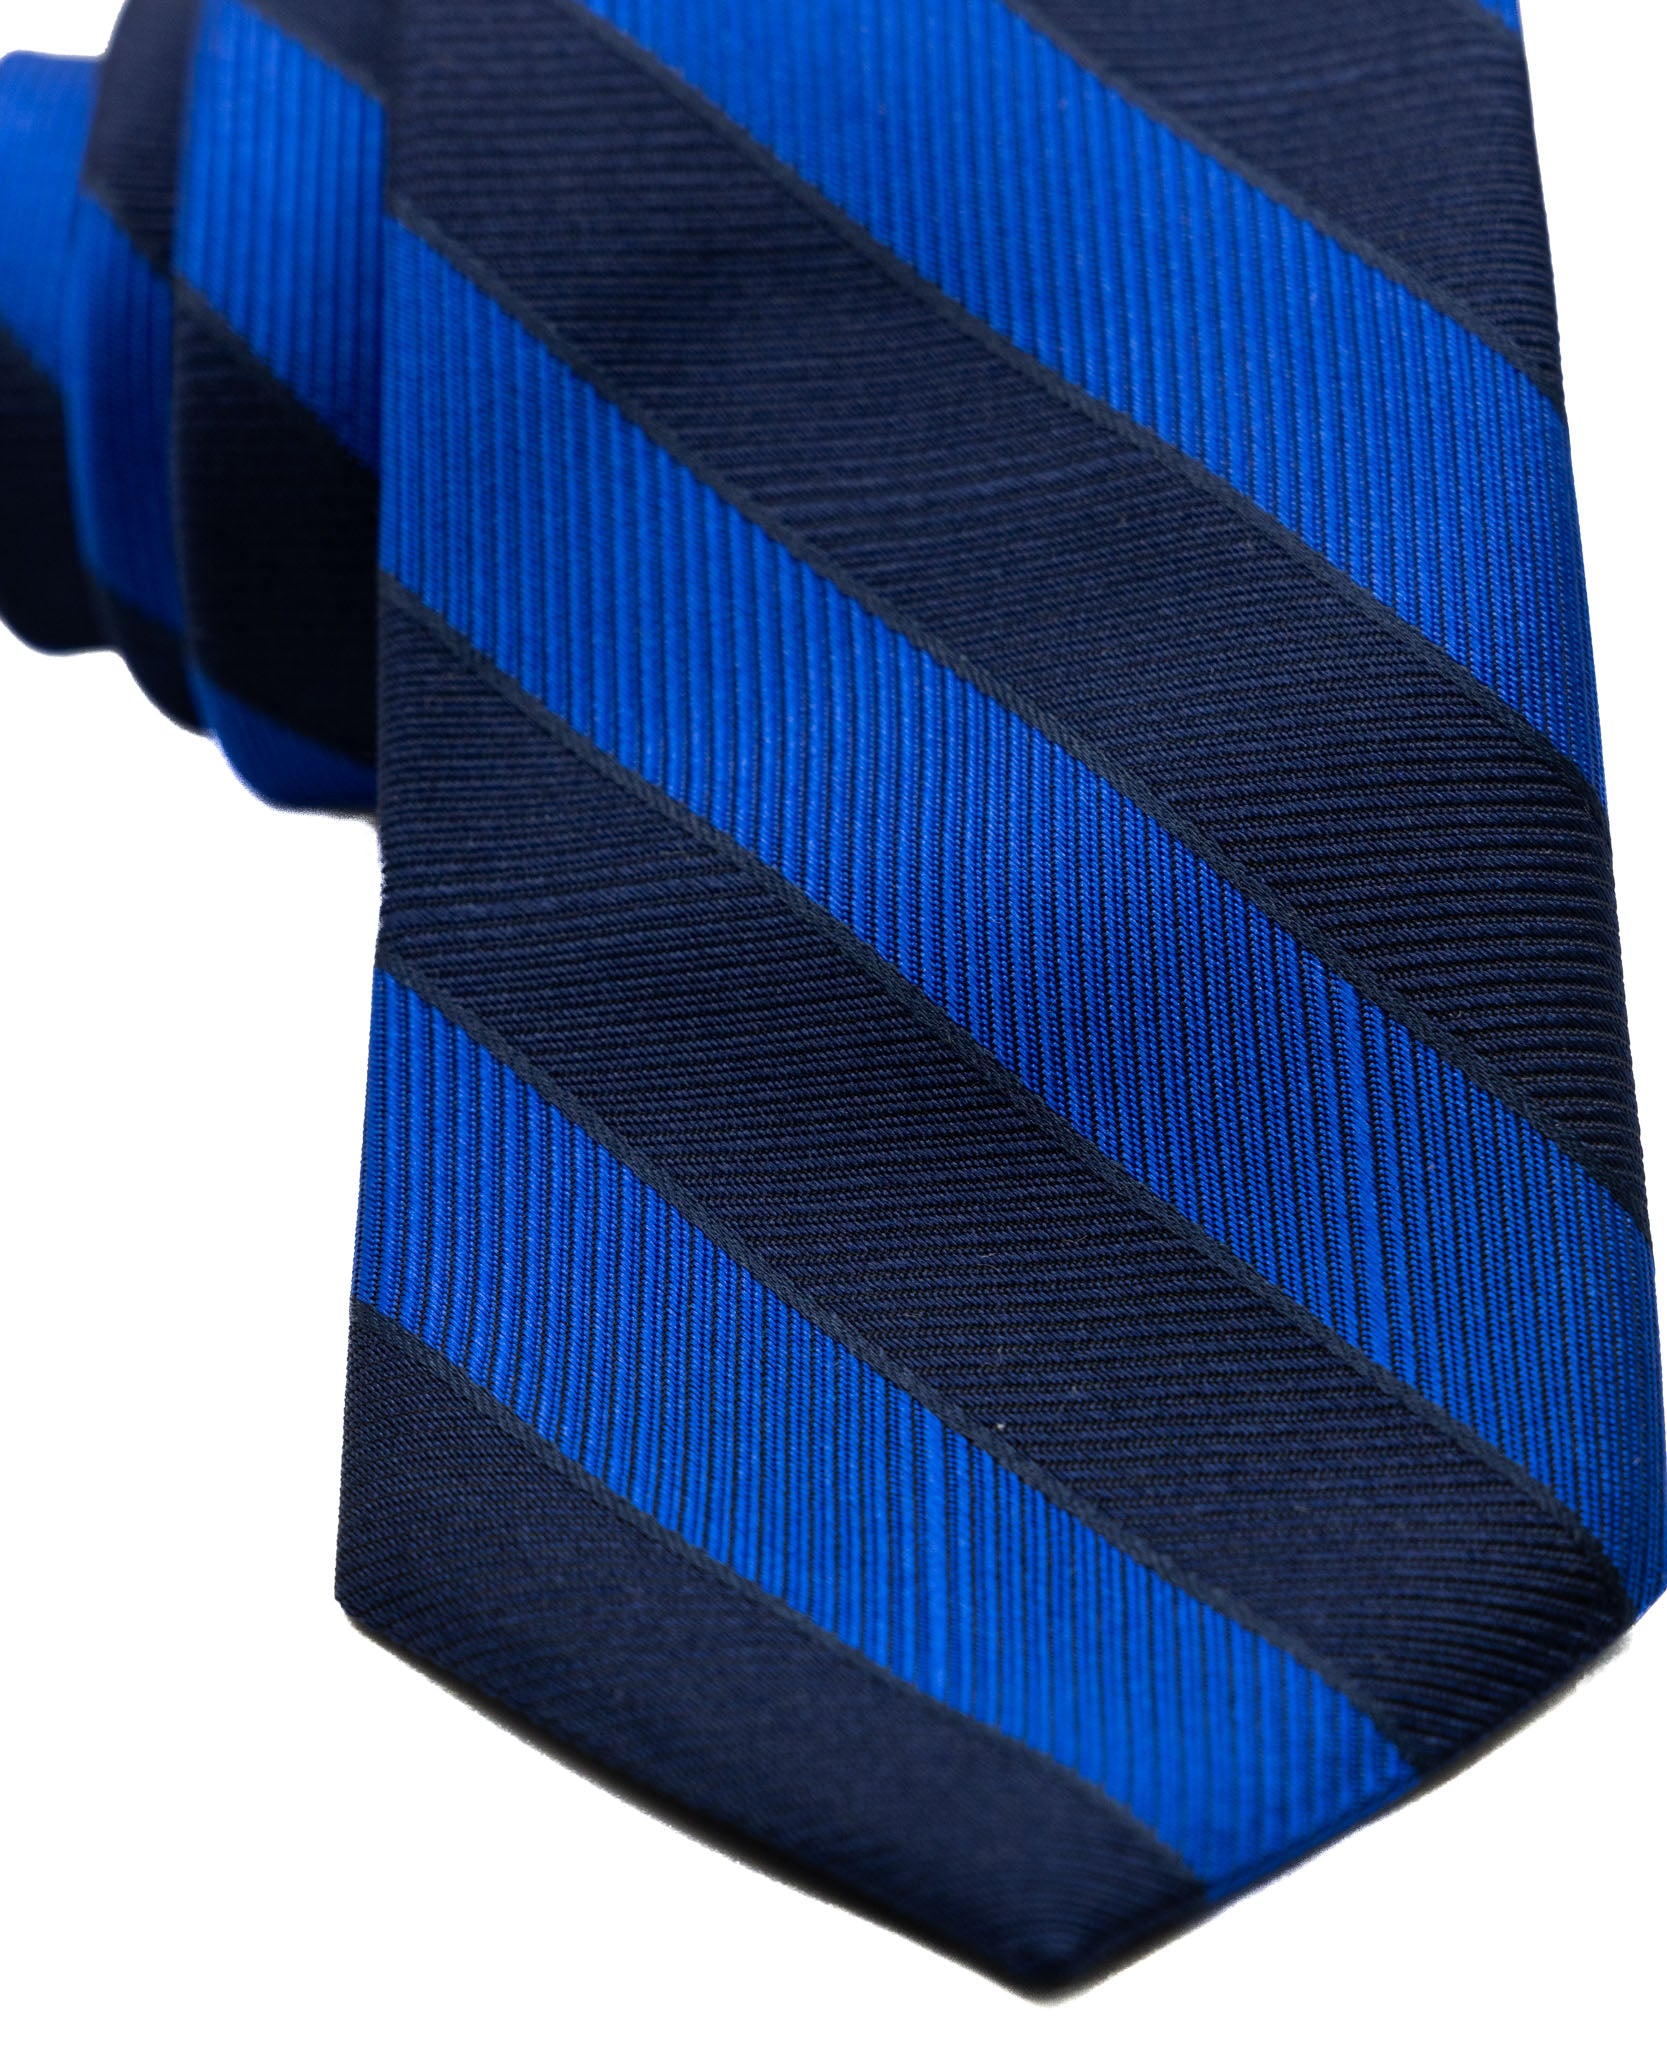 Cravate - en soie à rayures bleues et royales